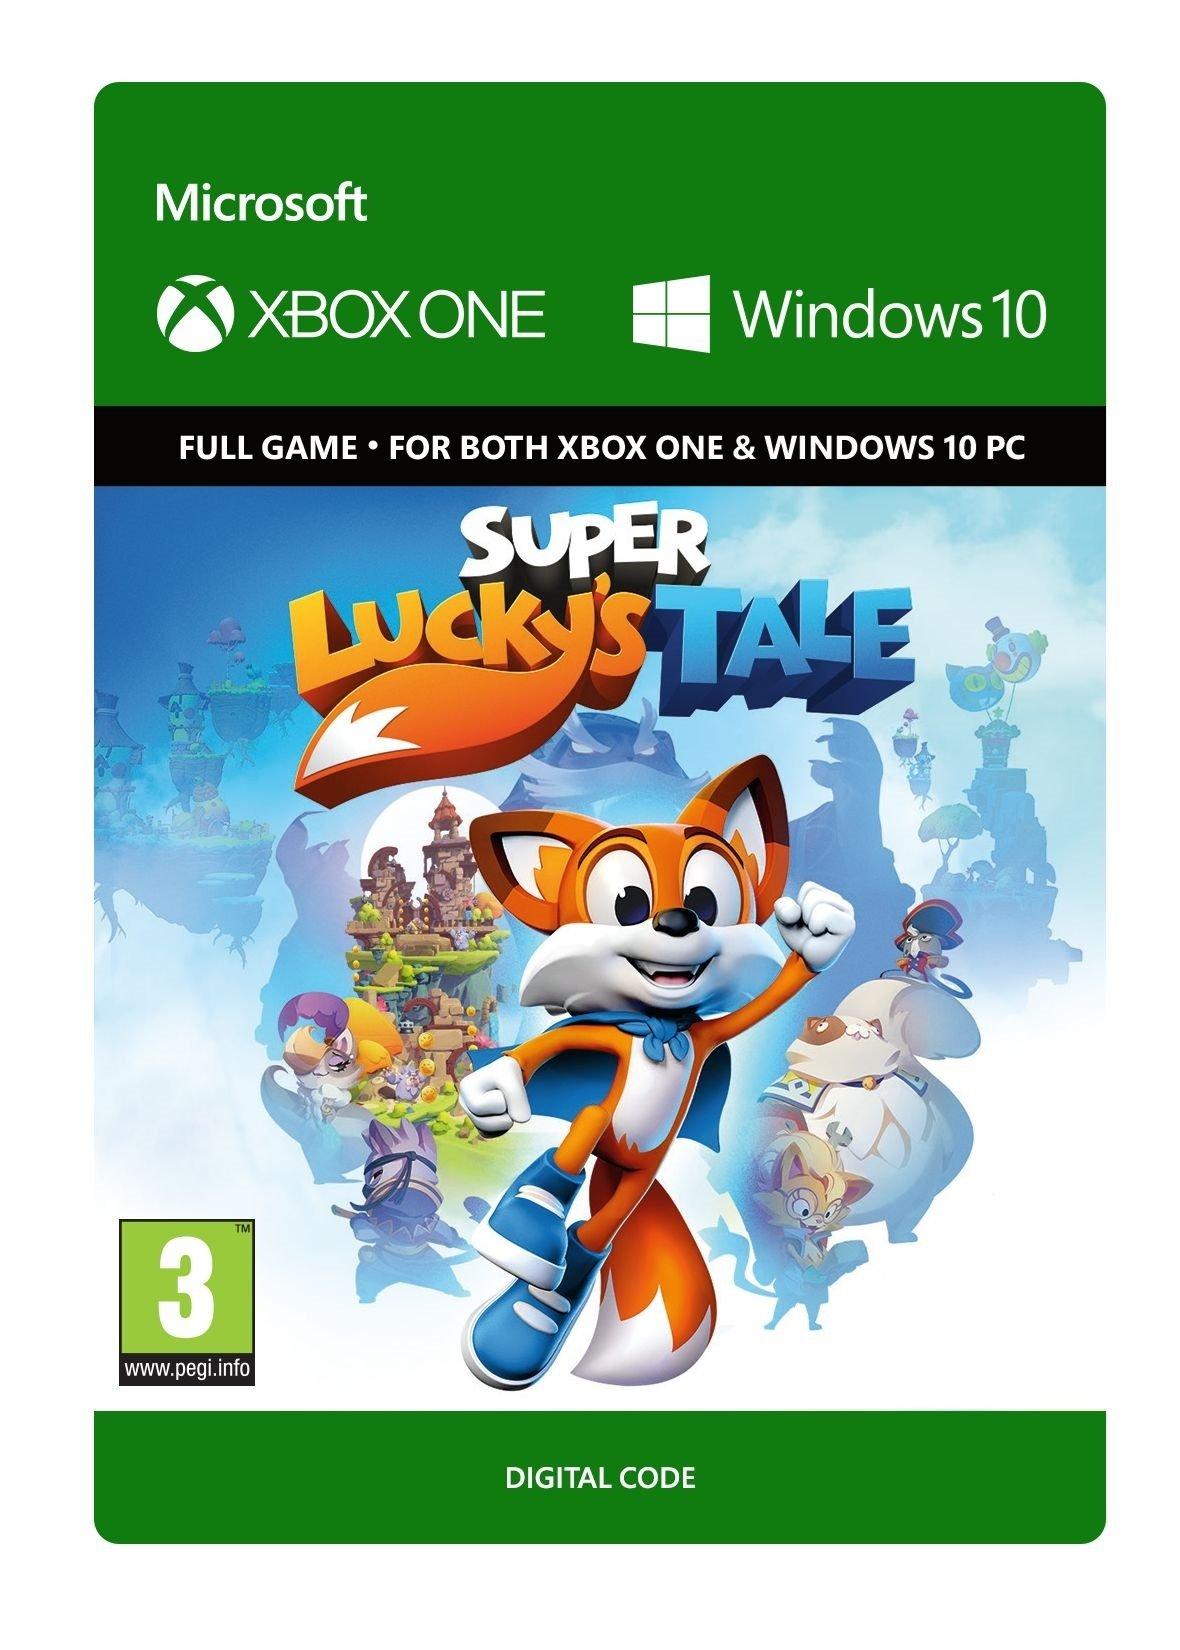 Super Lucky's Tale - Xbox One and Win 10 - Game | G7Q-00050 (5f37c7f6-39e2-4c95-b864-cdc3fa7200c0)